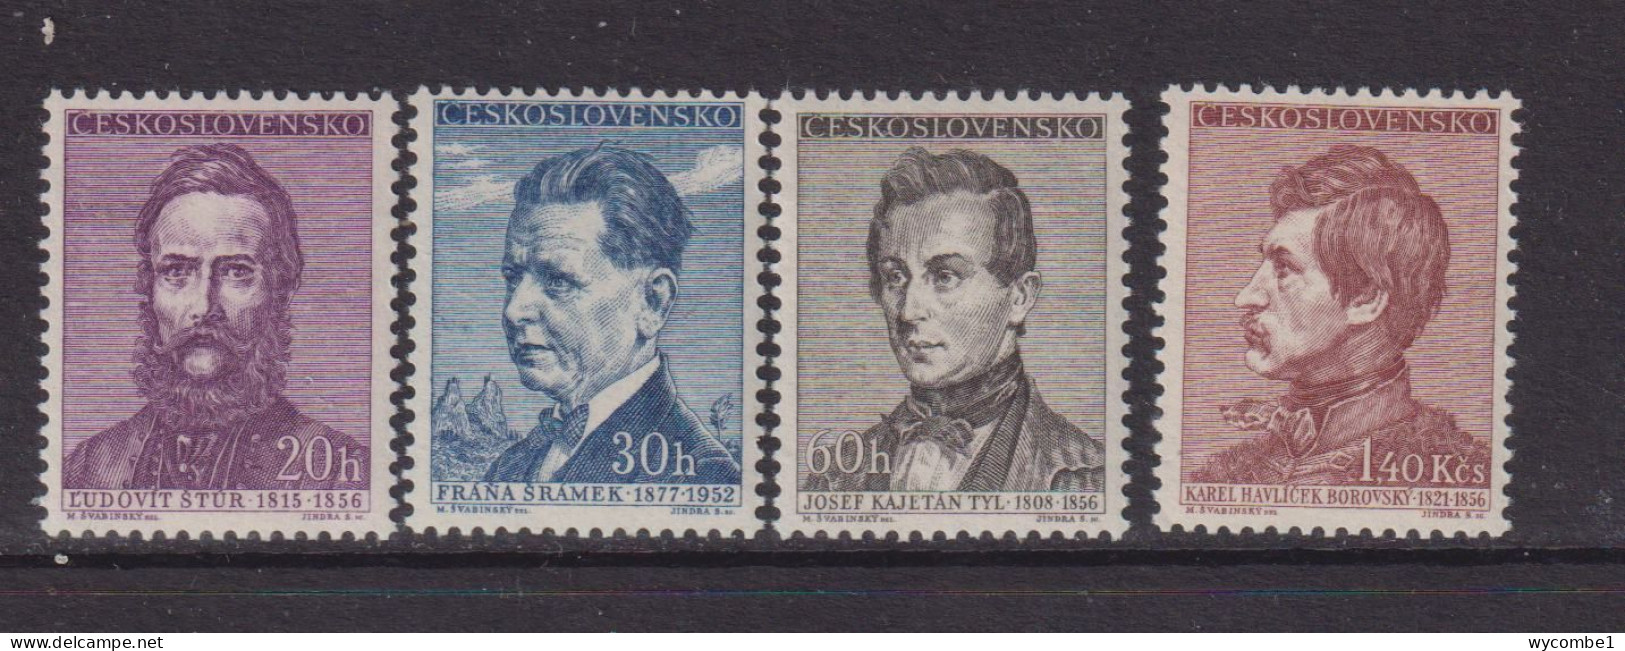 CZECHOSLOVAKIA  - 1956  Writers Set  Never Hinged Mint - Unused Stamps